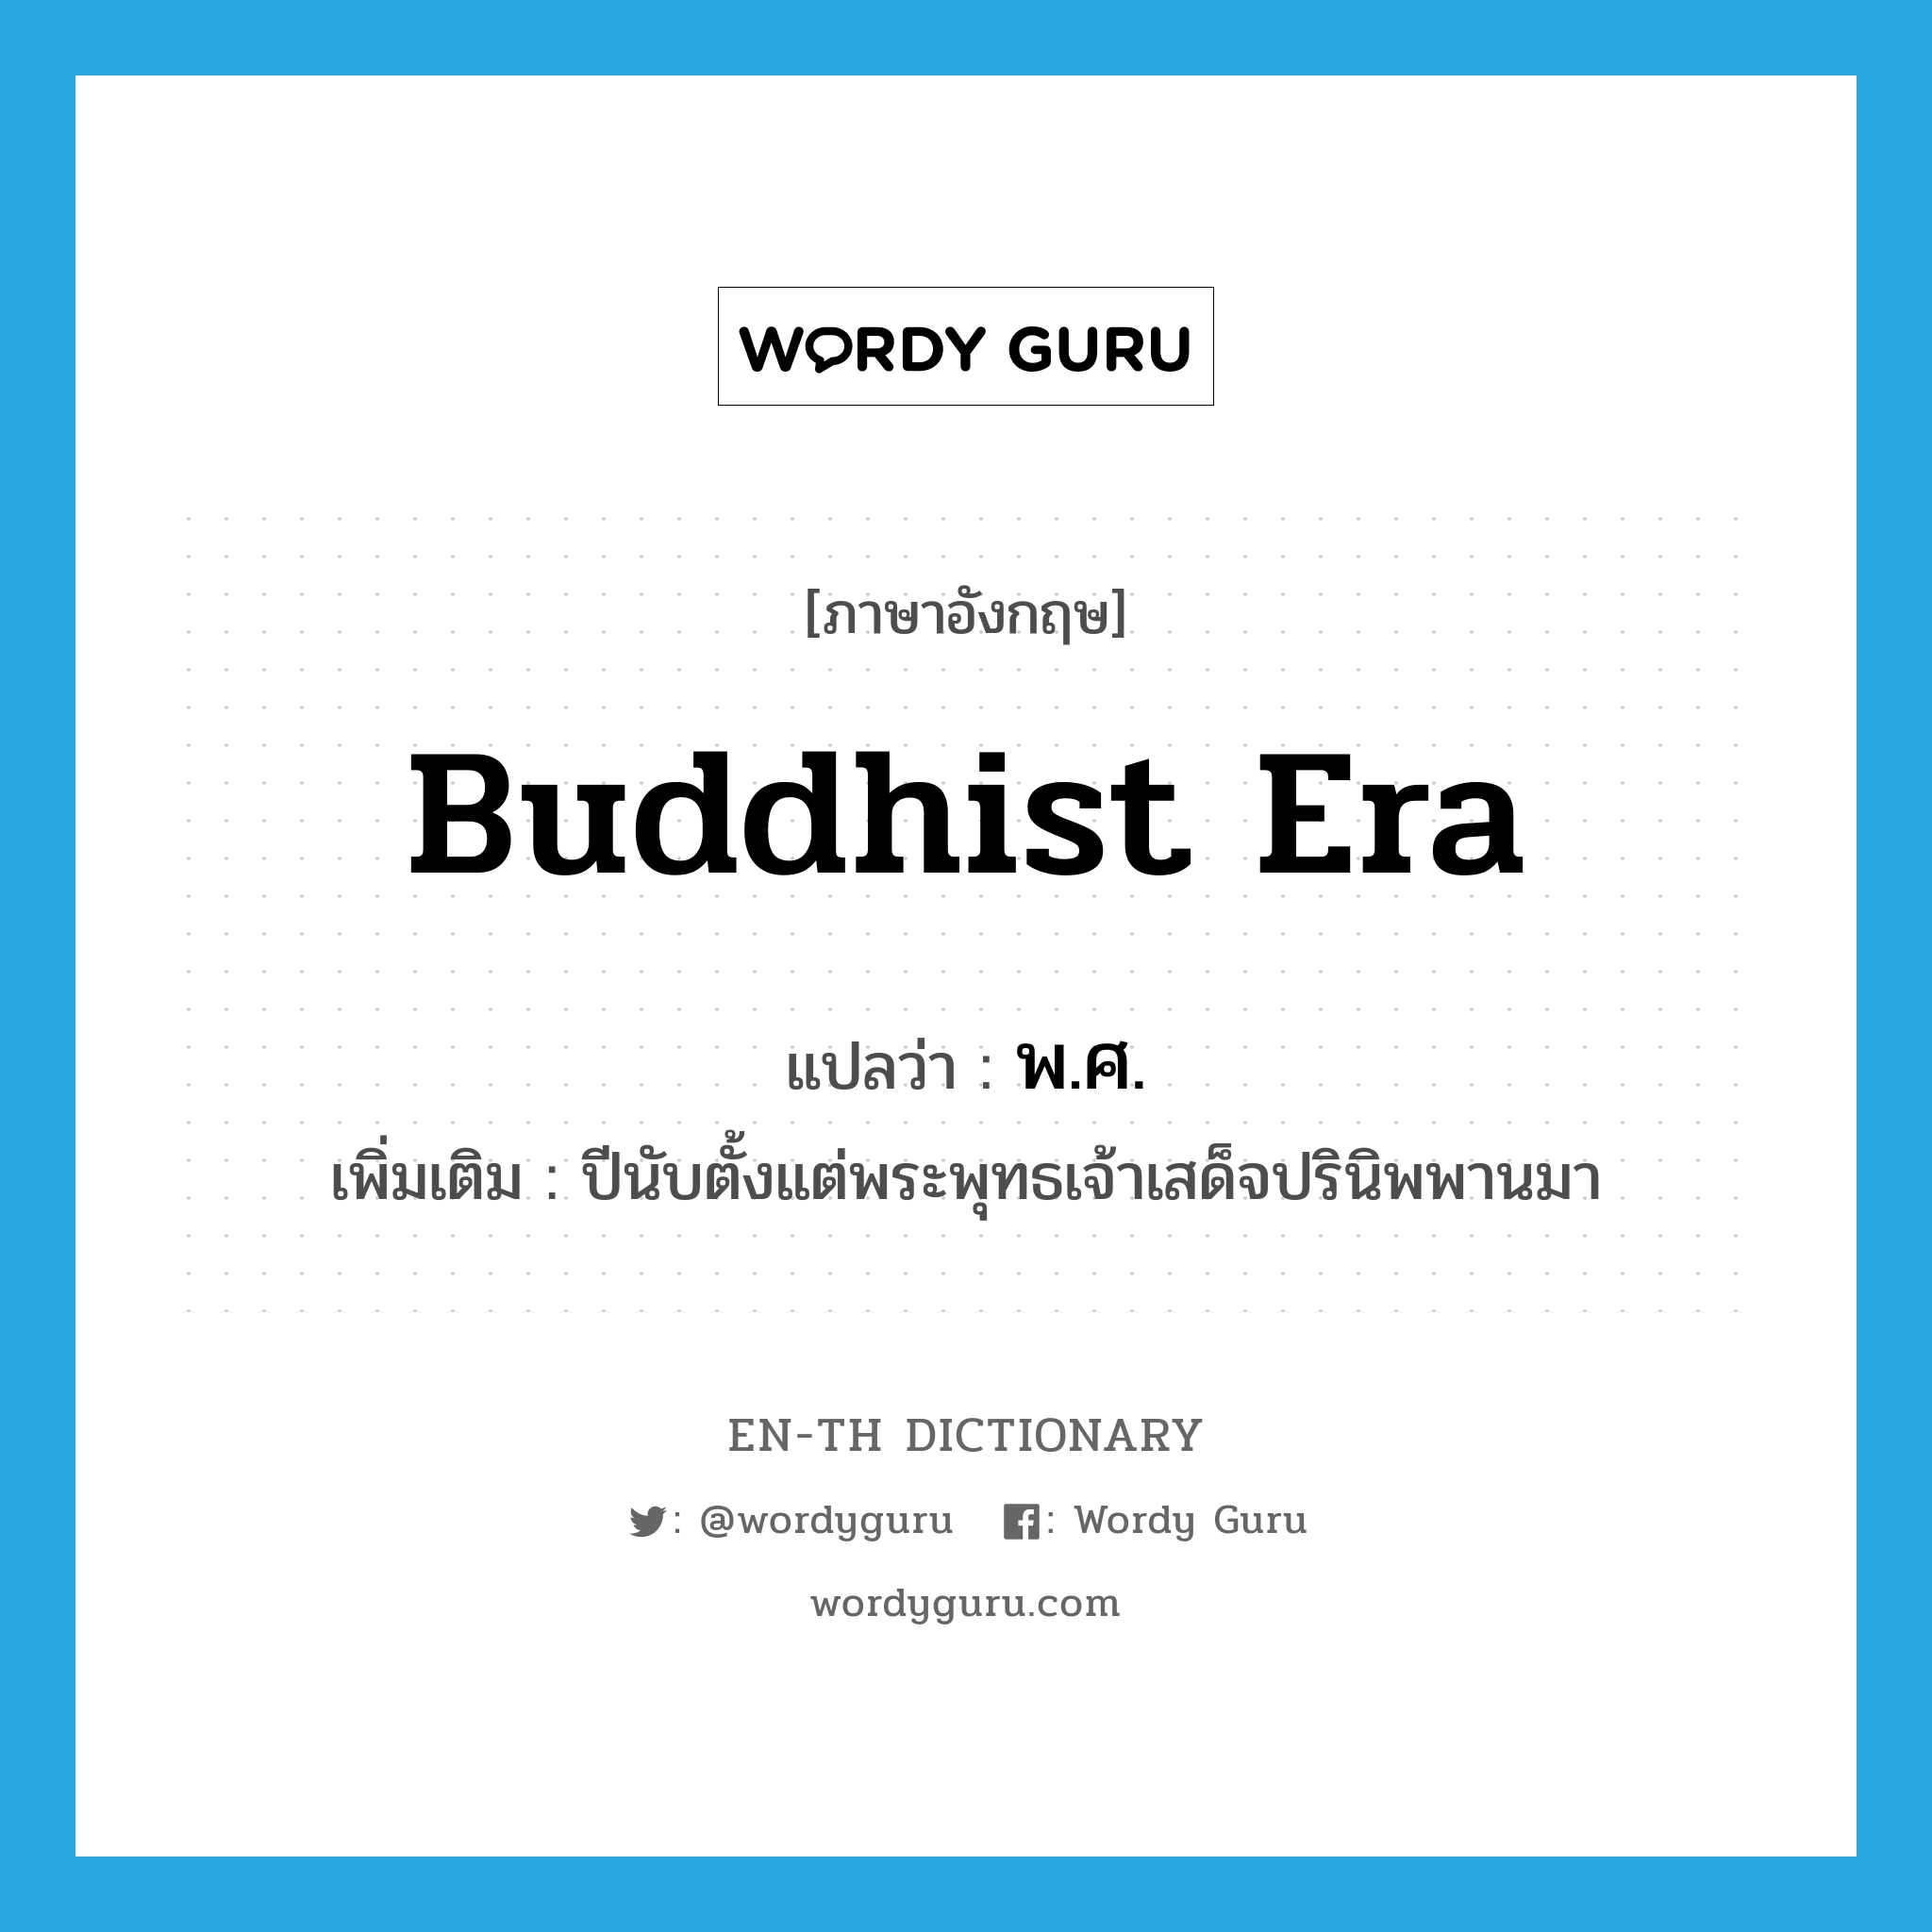 Buddhist era แปลว่า?, คำศัพท์ภาษาอังกฤษ Buddhist Era แปลว่า พ.ศ. ประเภท N เพิ่มเติม ปีนับตั้งแต่พระพุทธเจ้าเสด็จปรินิพพานมา หมวด N